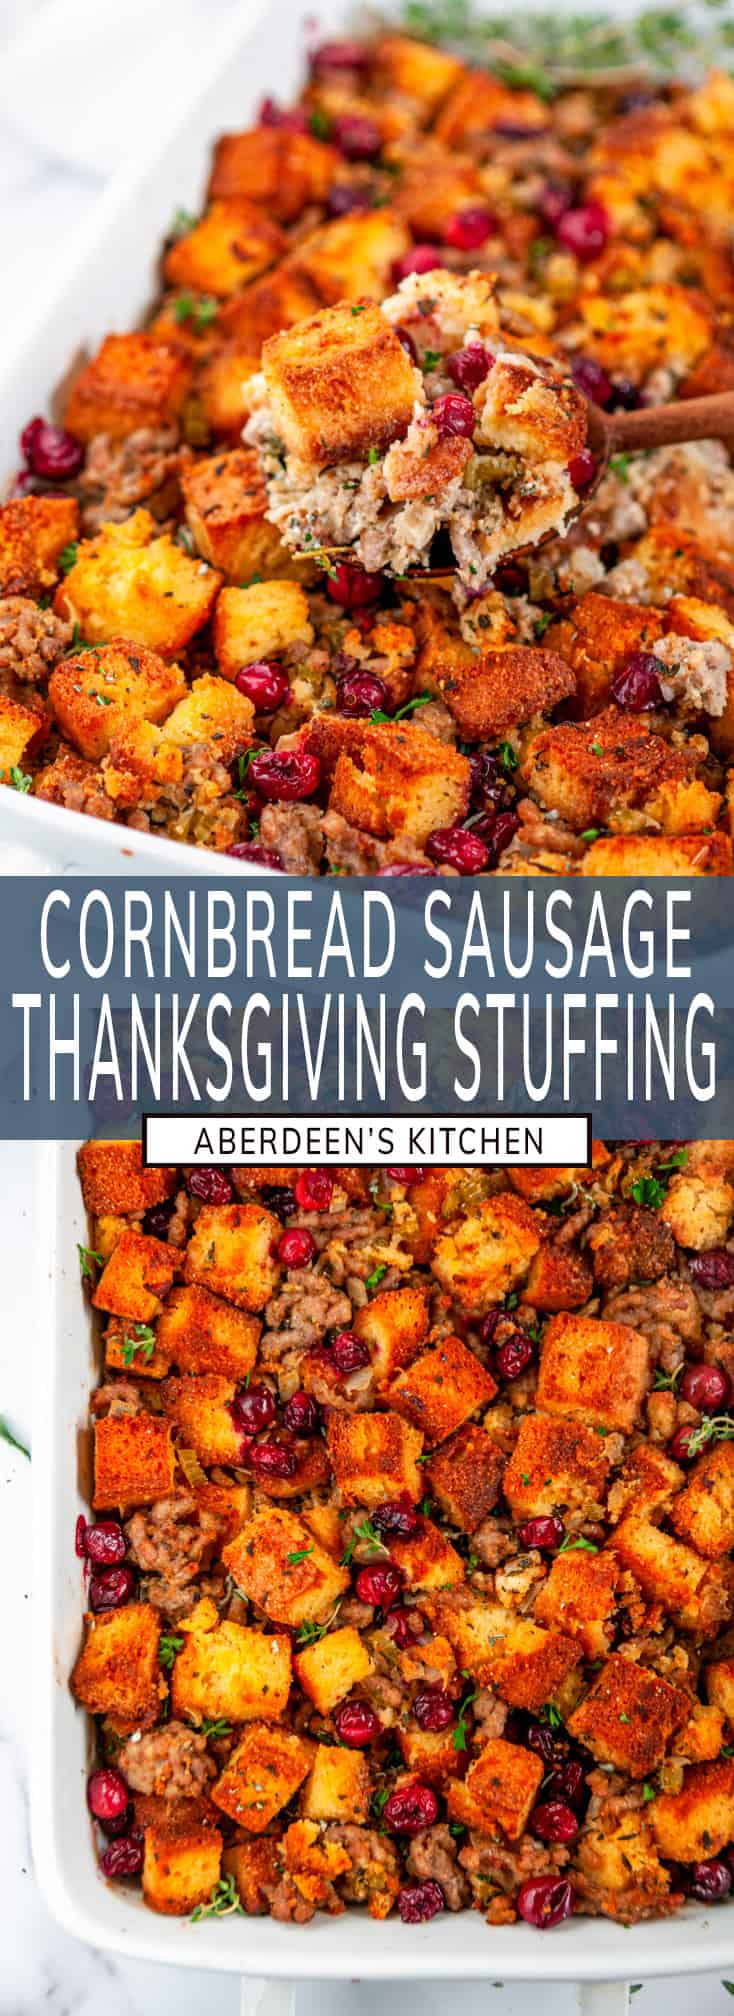 Cornbread Sausage Stuffing - Aberdeen's Kitchen